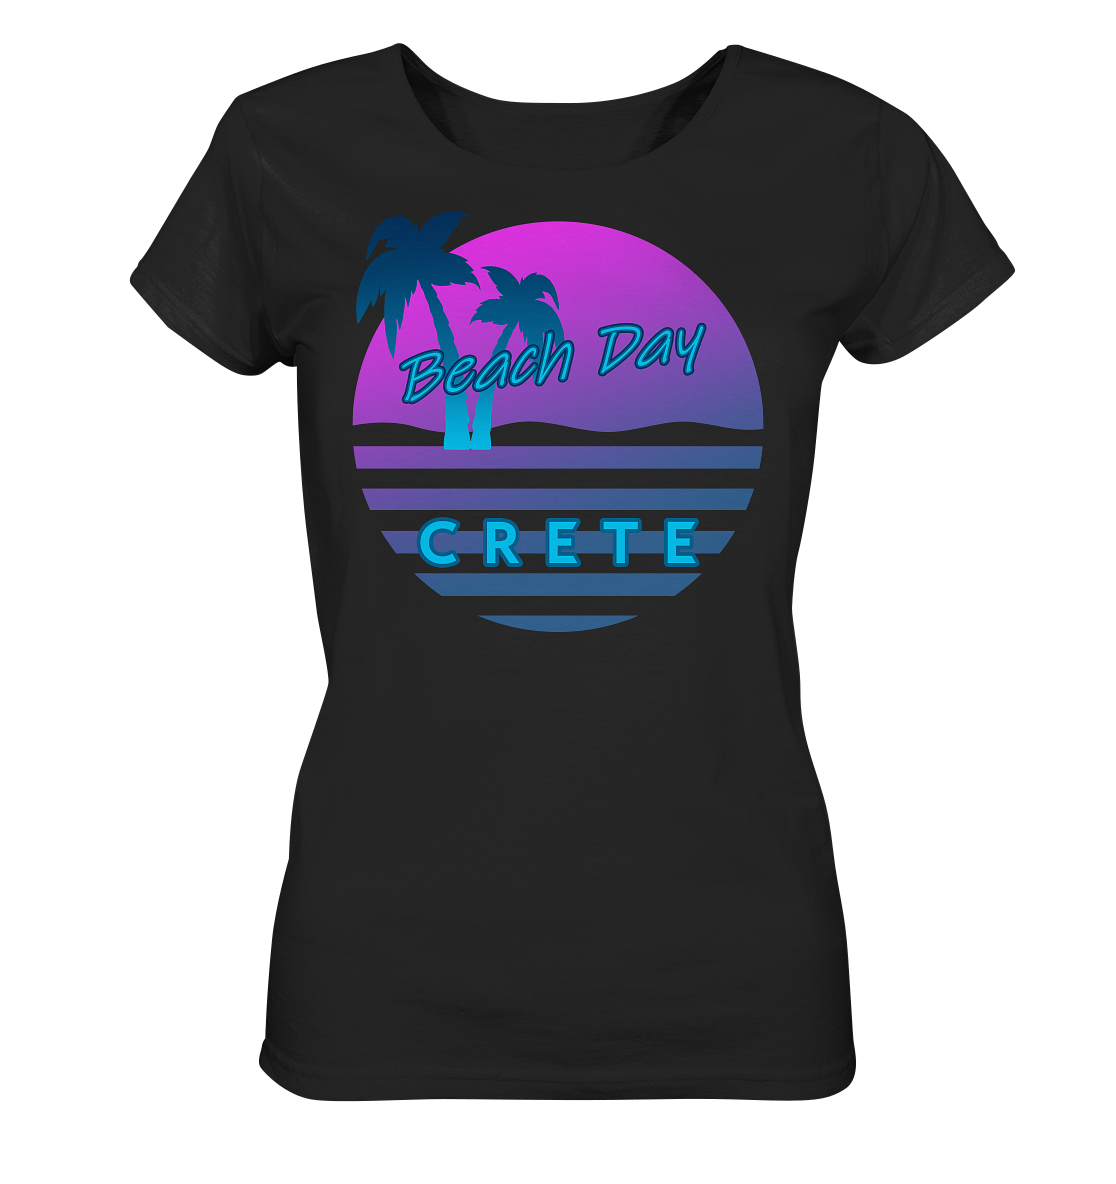 Beach Day Crete - Ladies Organic Shirt